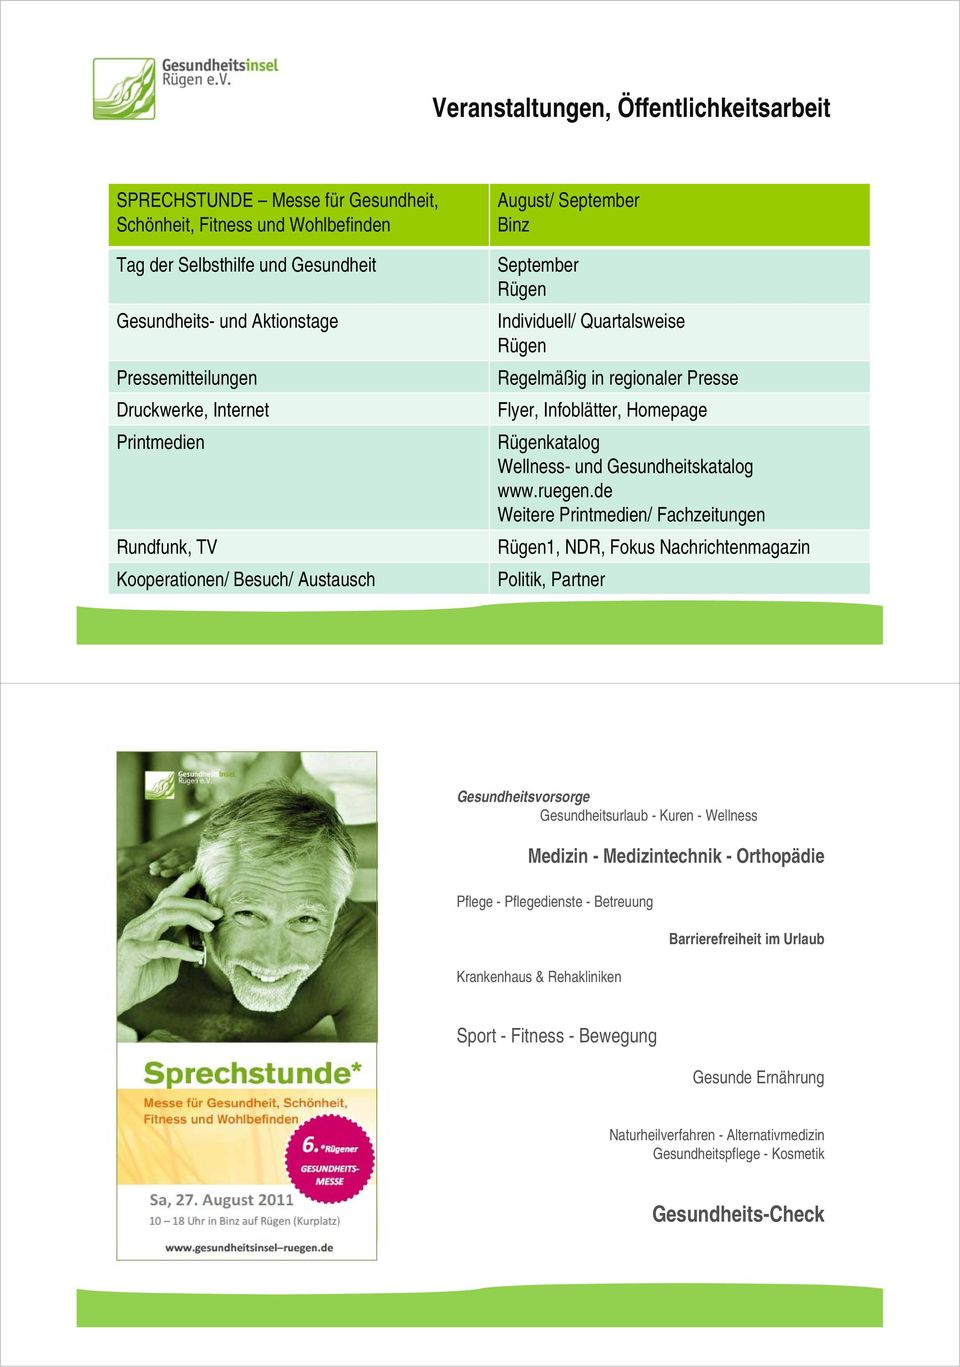 katalog Wellness- und Gesundheitskatalog www.ruegen.